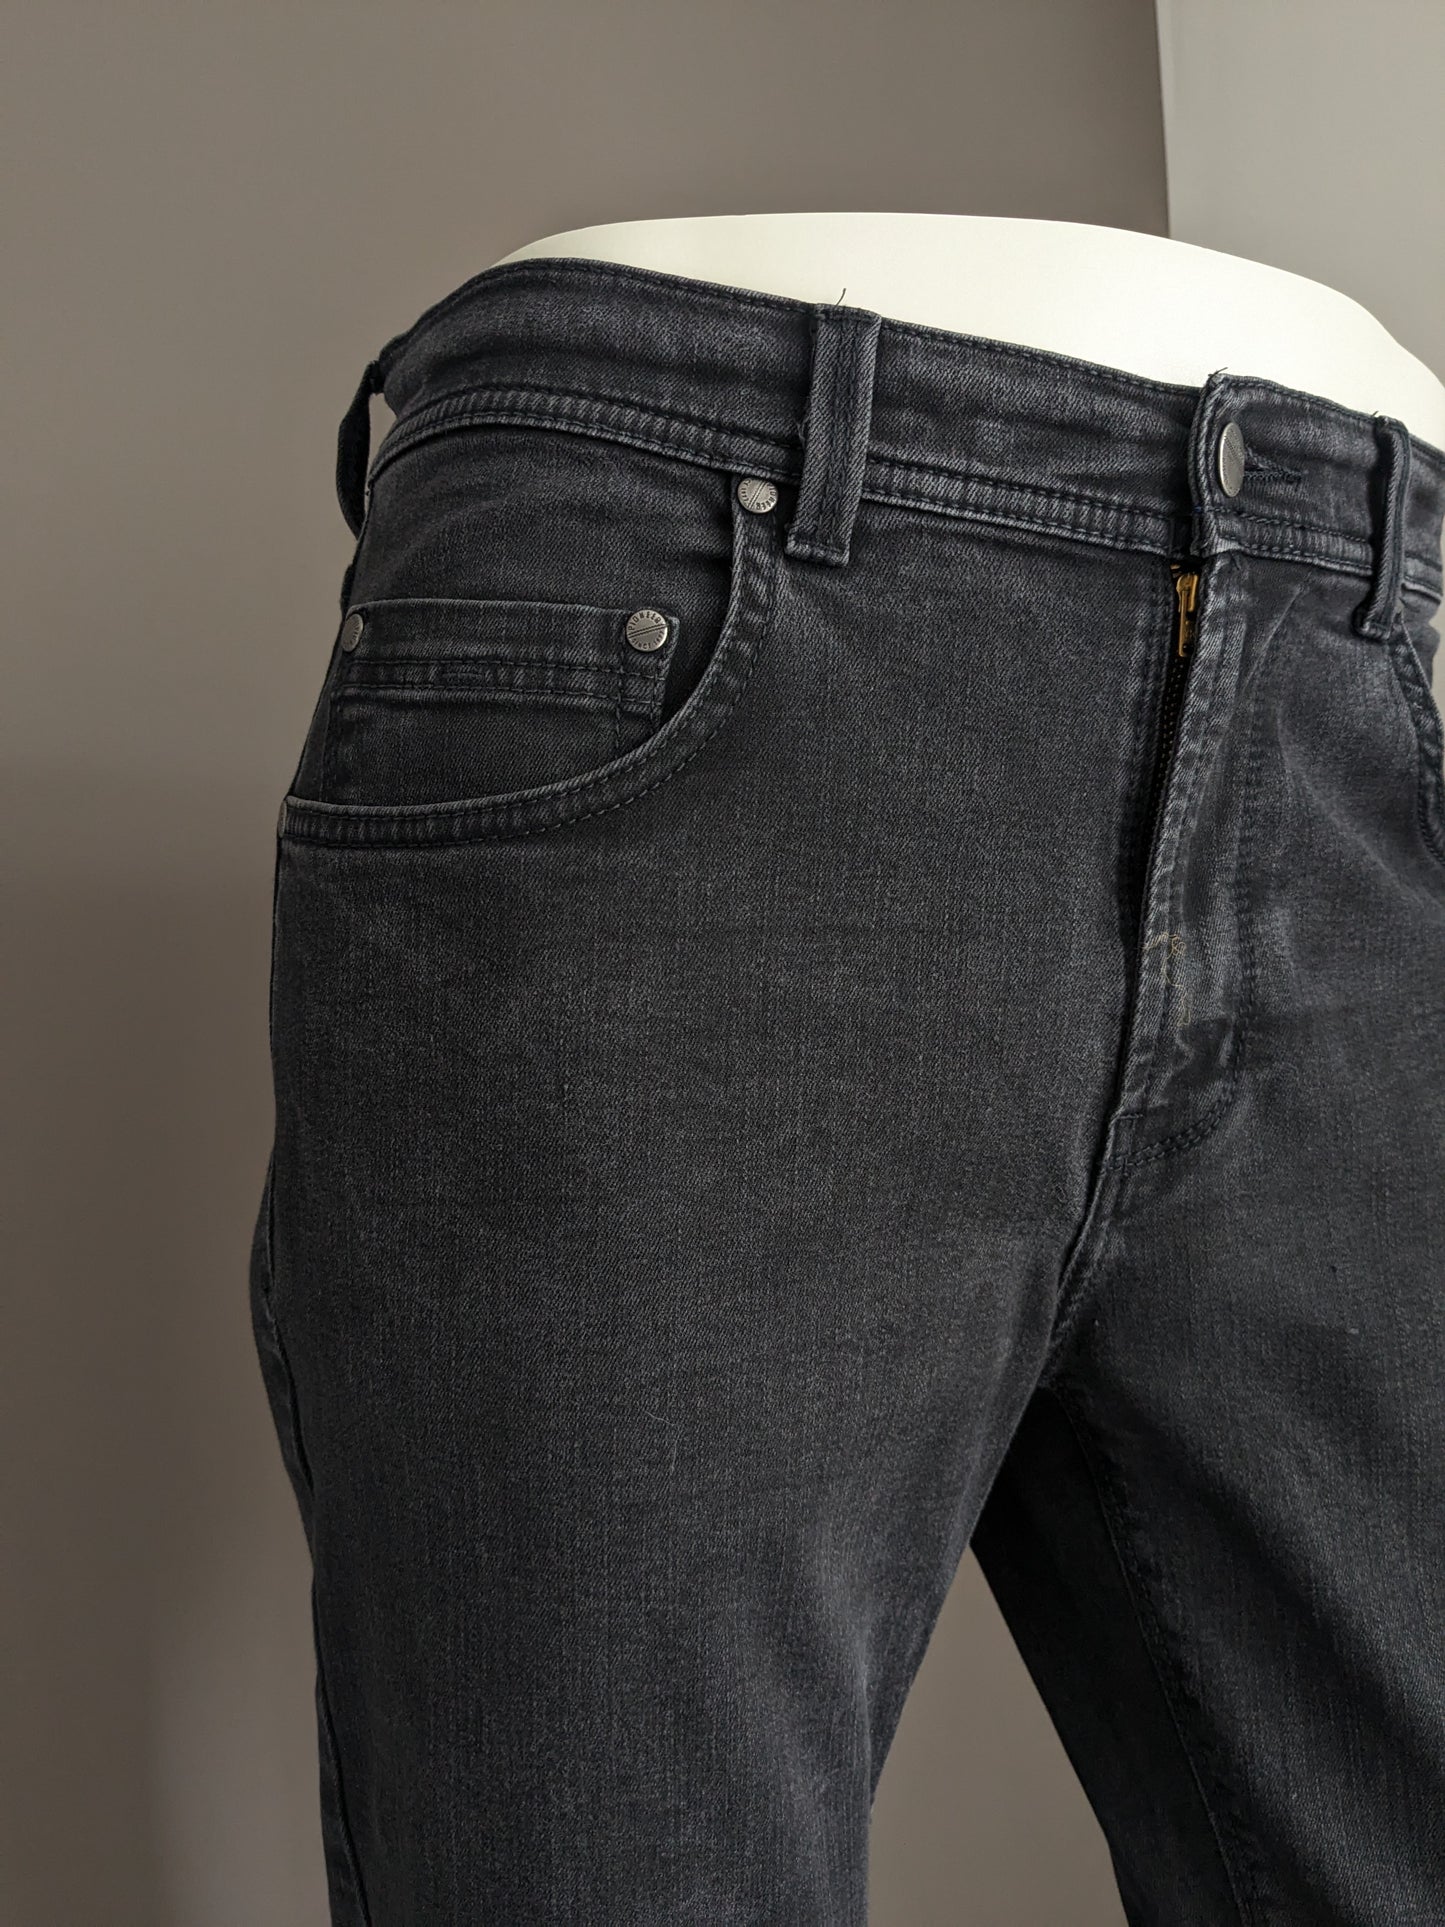 Jeans pionieristici. Colorato nero. Digita Rando. Megaflex. Size W33 - L30. (abbreviato)